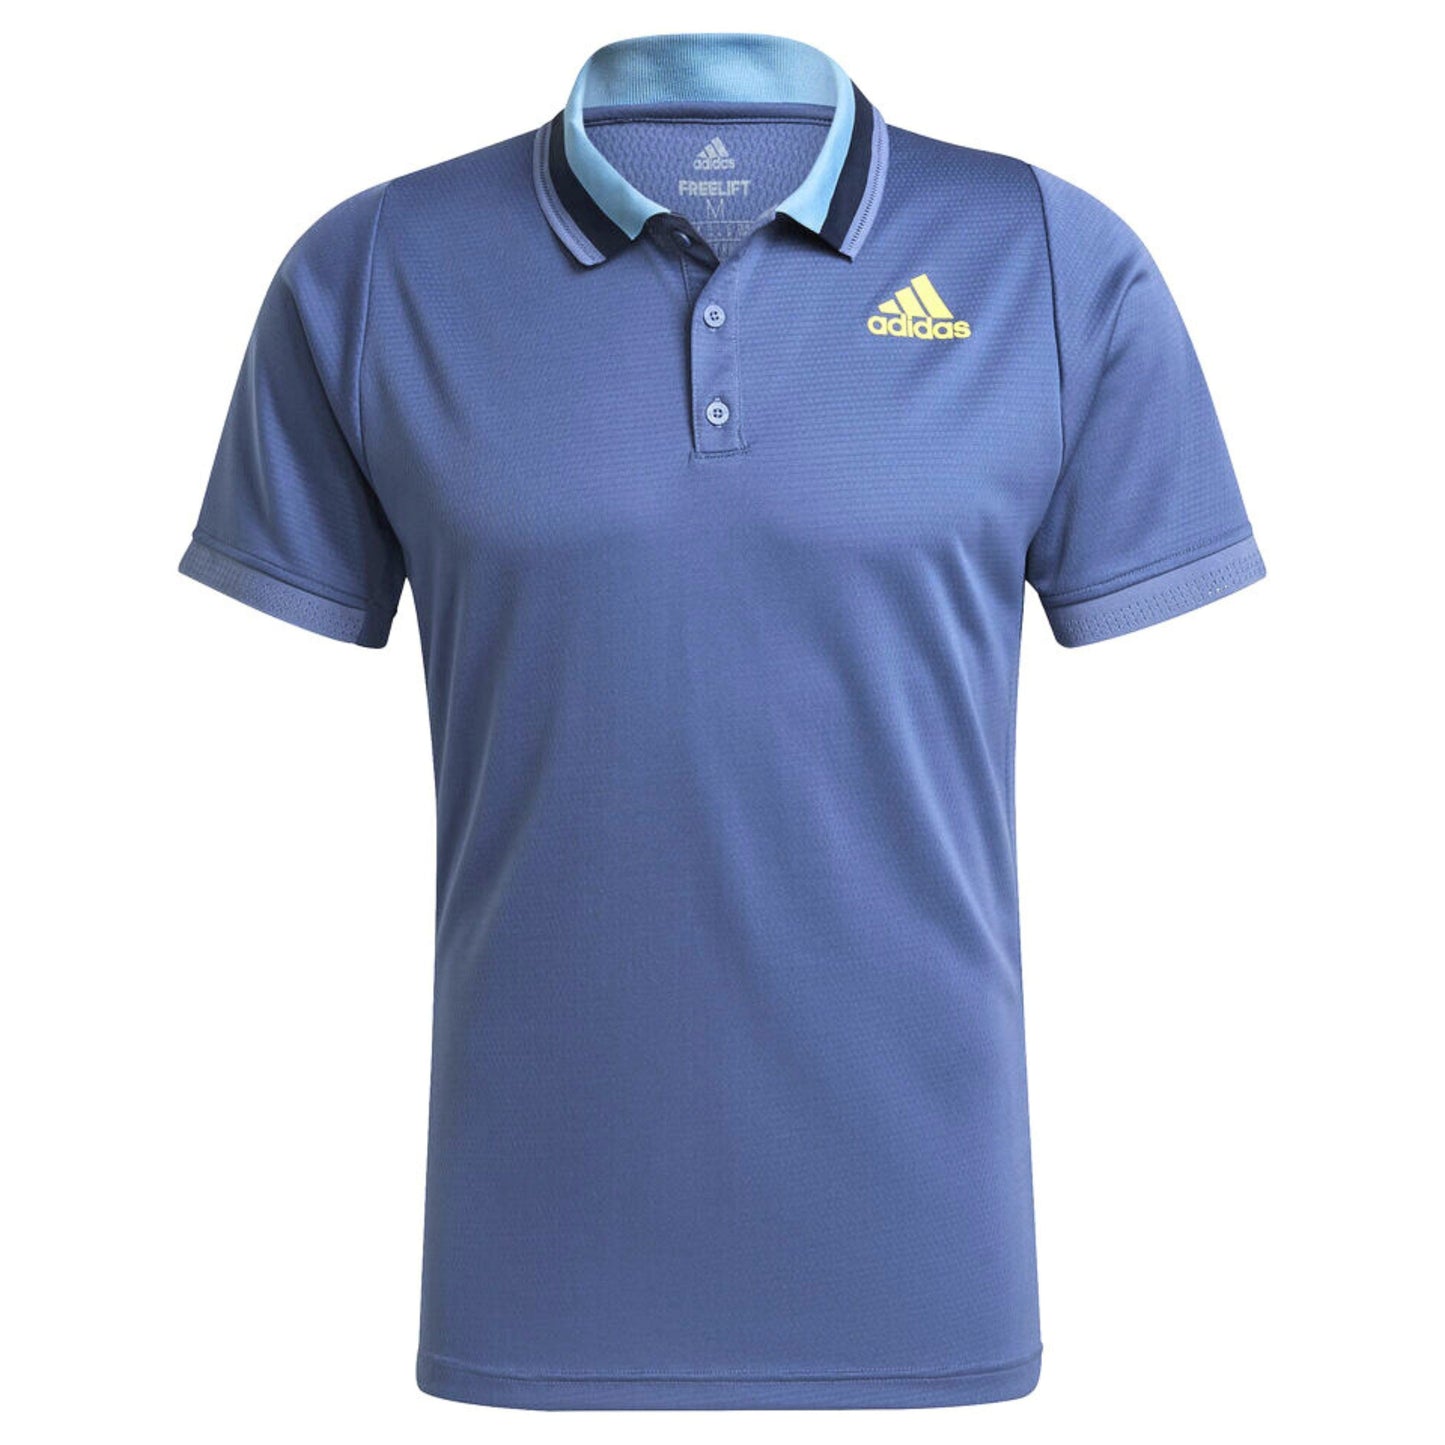 ADIDAS Mens Tops M / Blue ADIDAS -  Polo T Shirt Freelift Primeblue